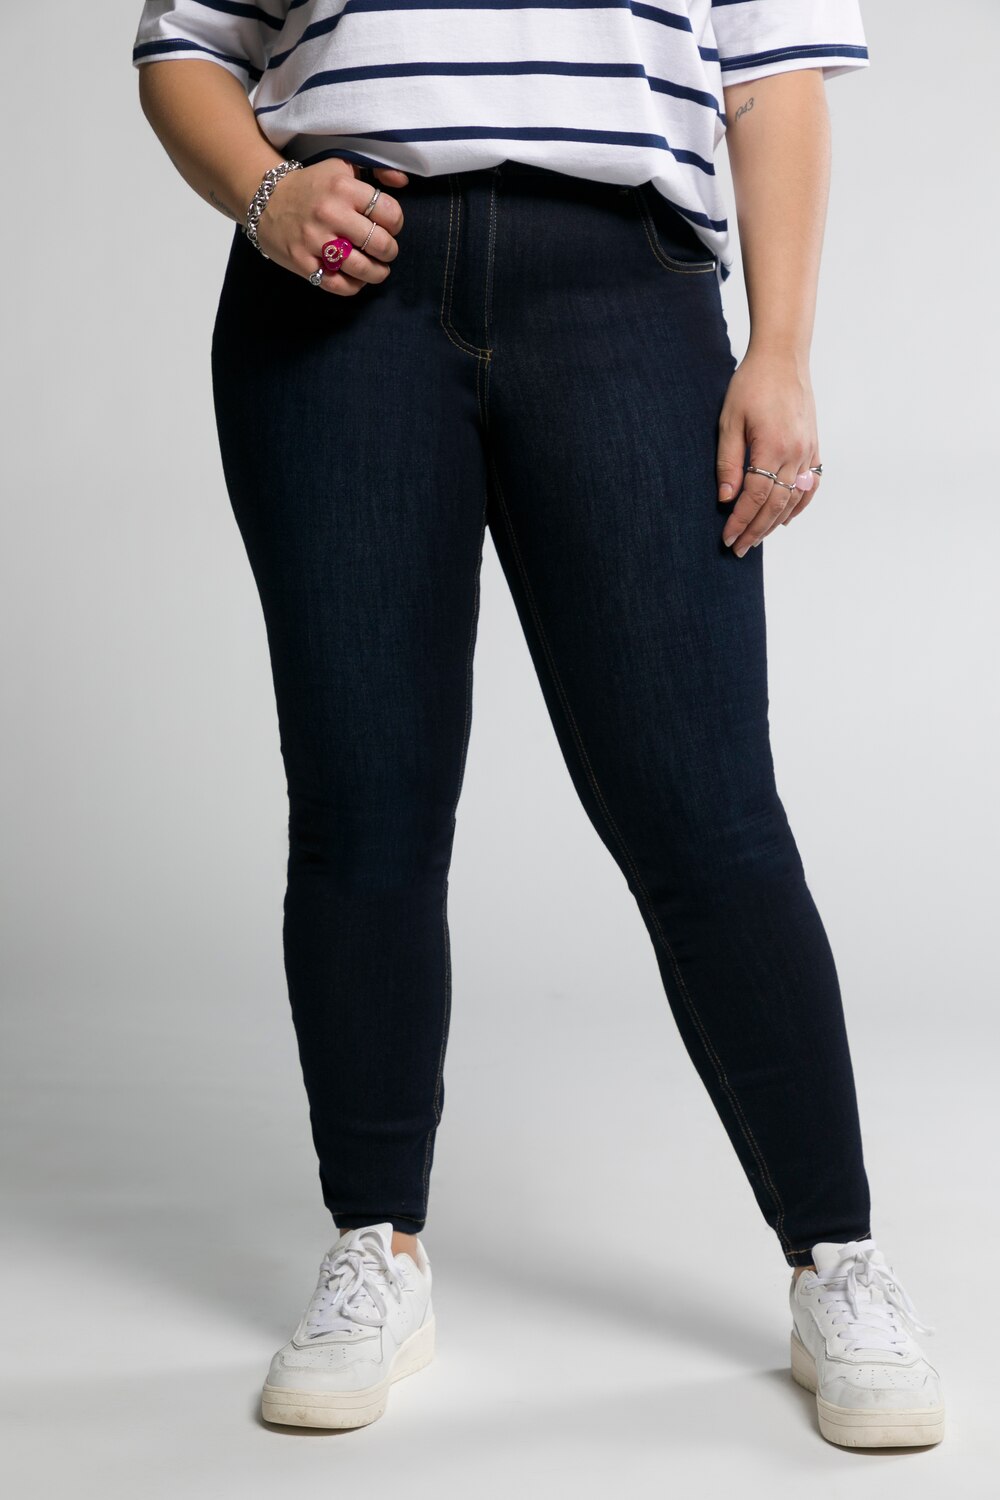 Grote Maten jeans, Dames, blauw, Maat: 52, Katoen/Polyester, Studio Untold